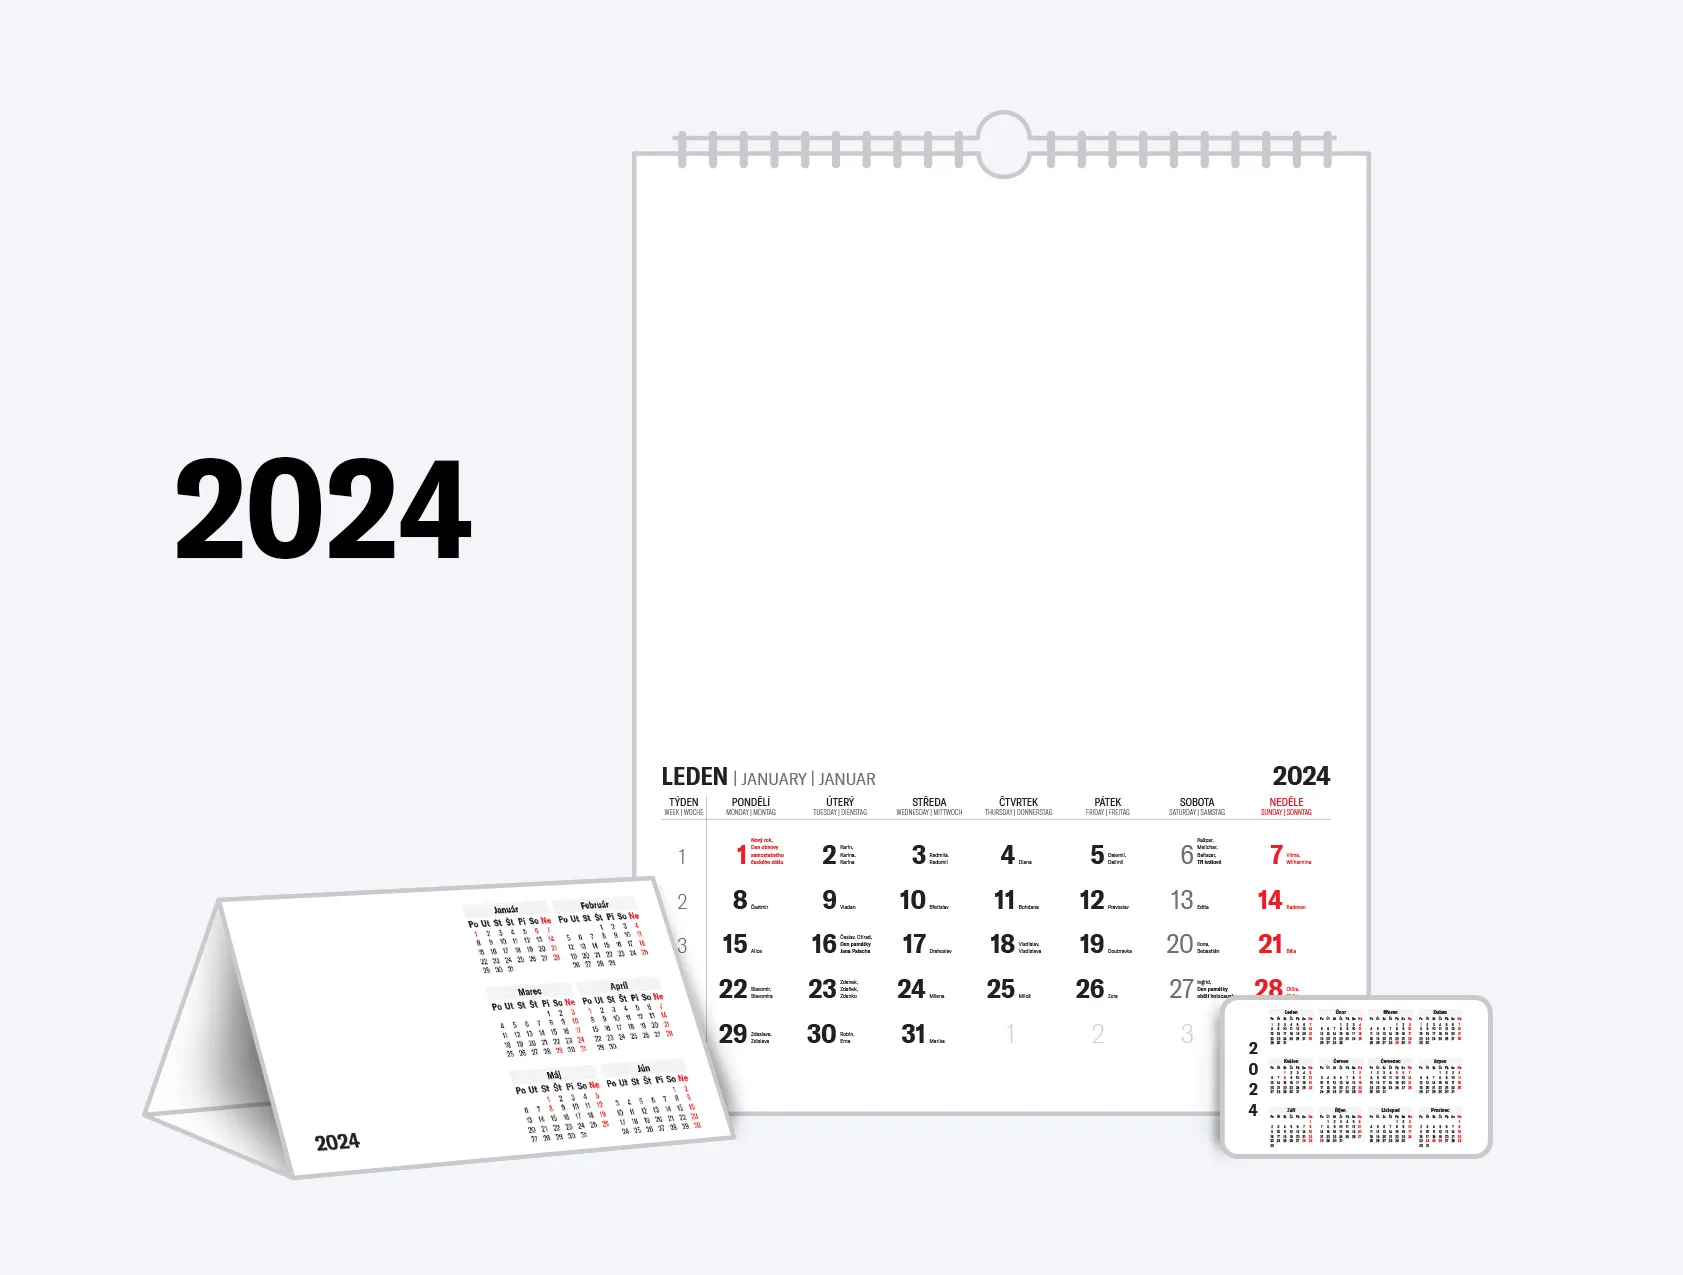 Kalendária 2024 ke stažení